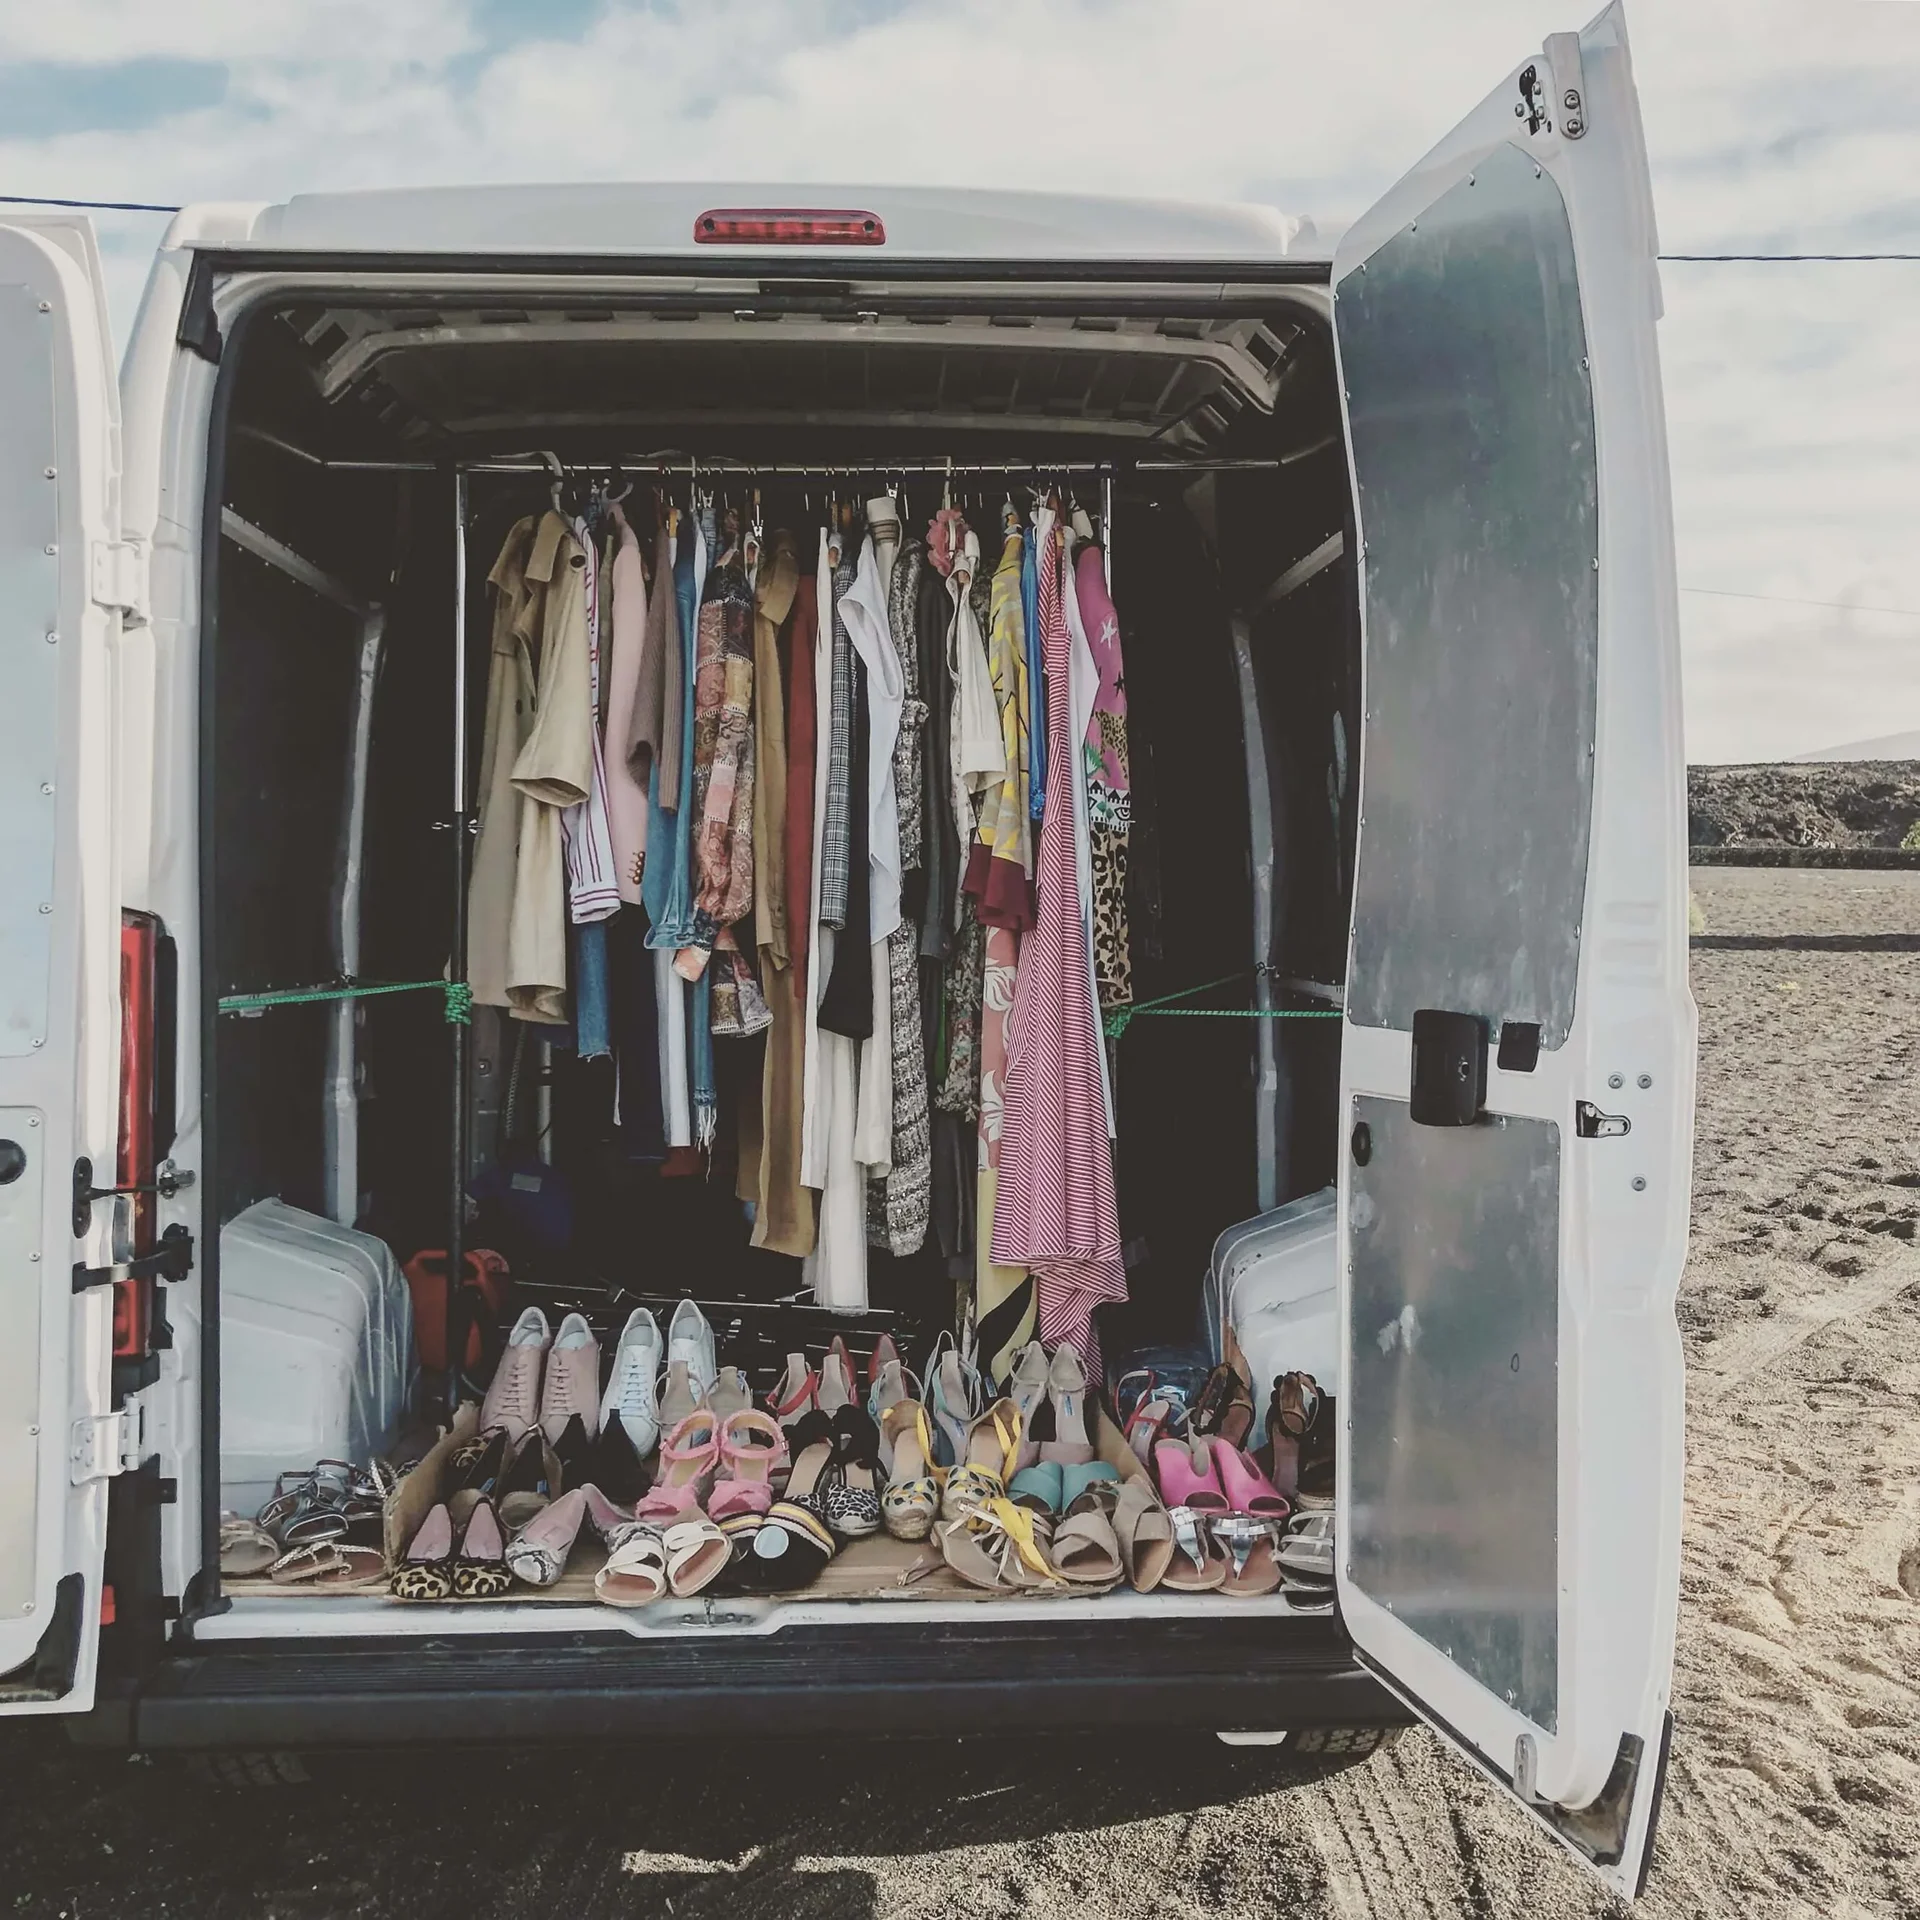 Cornland Studio - Le coffre d'une camionette ouvert avec à l'intérieur une pendrie remlie d'habits colorés.